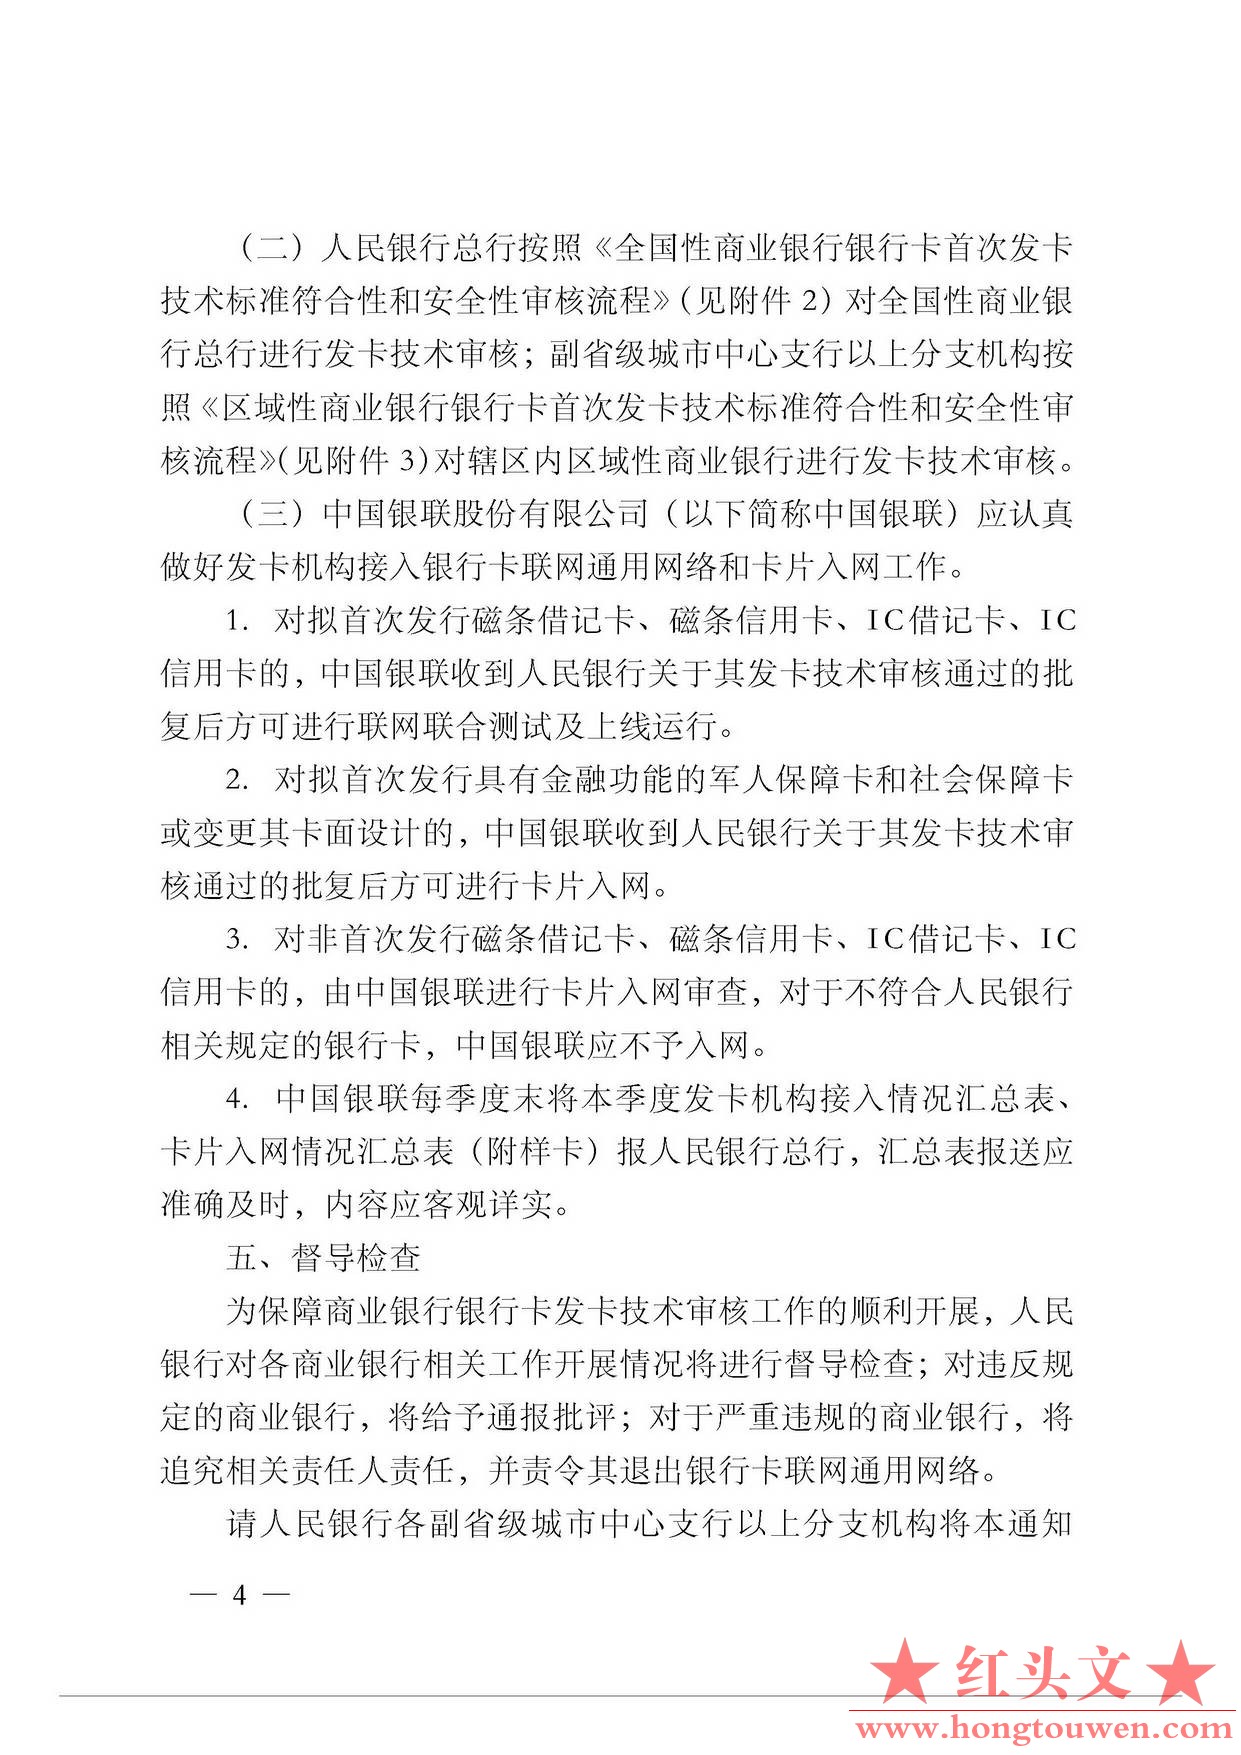 银发[2011]47号-中国人民银行关于进一步规范和加强商业银行银行卡发卡技术管理工作的.jpg